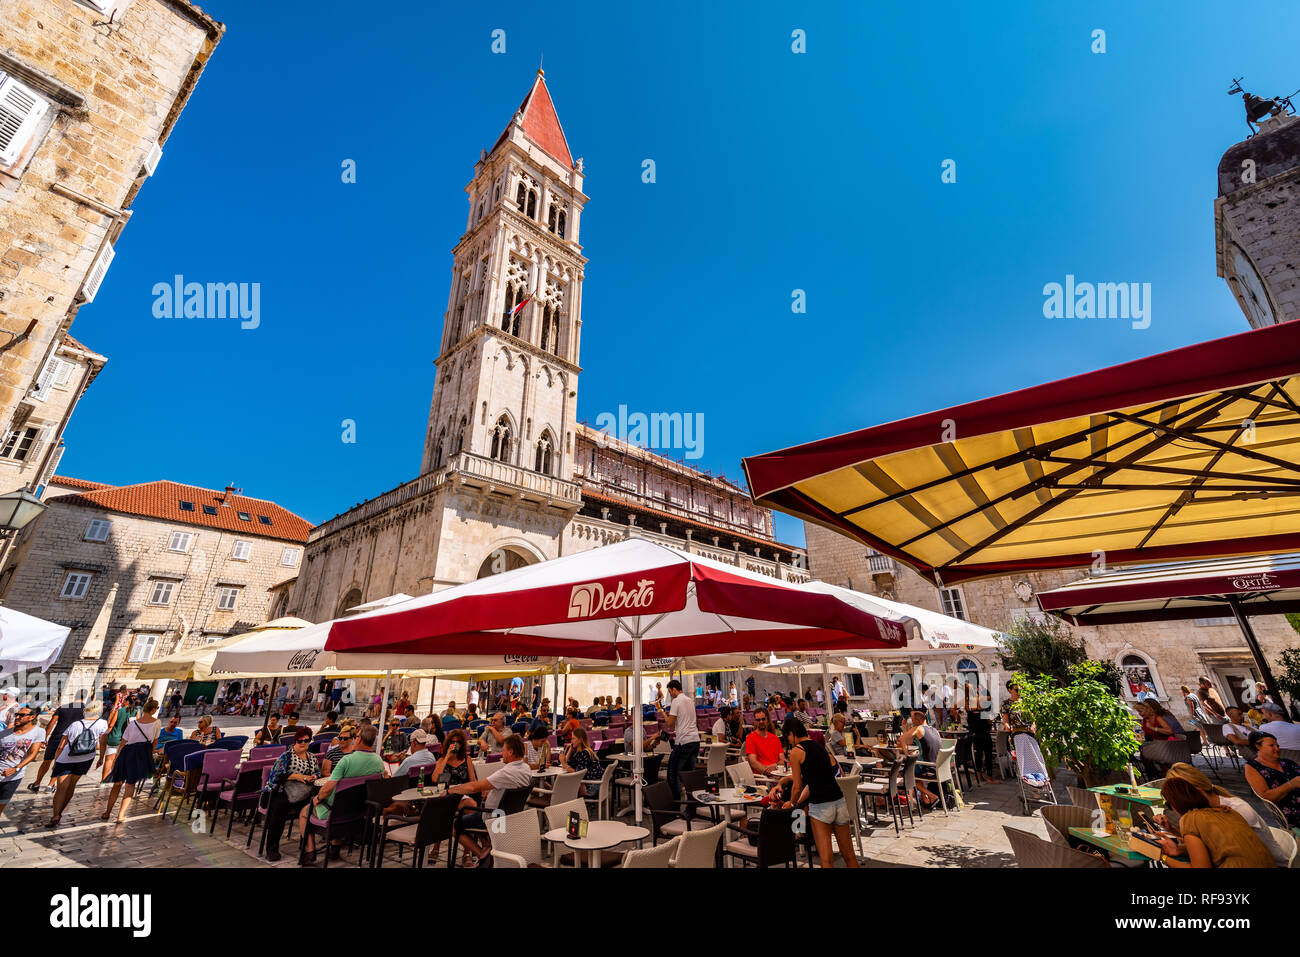 Trogir, Croatia Stock Photo